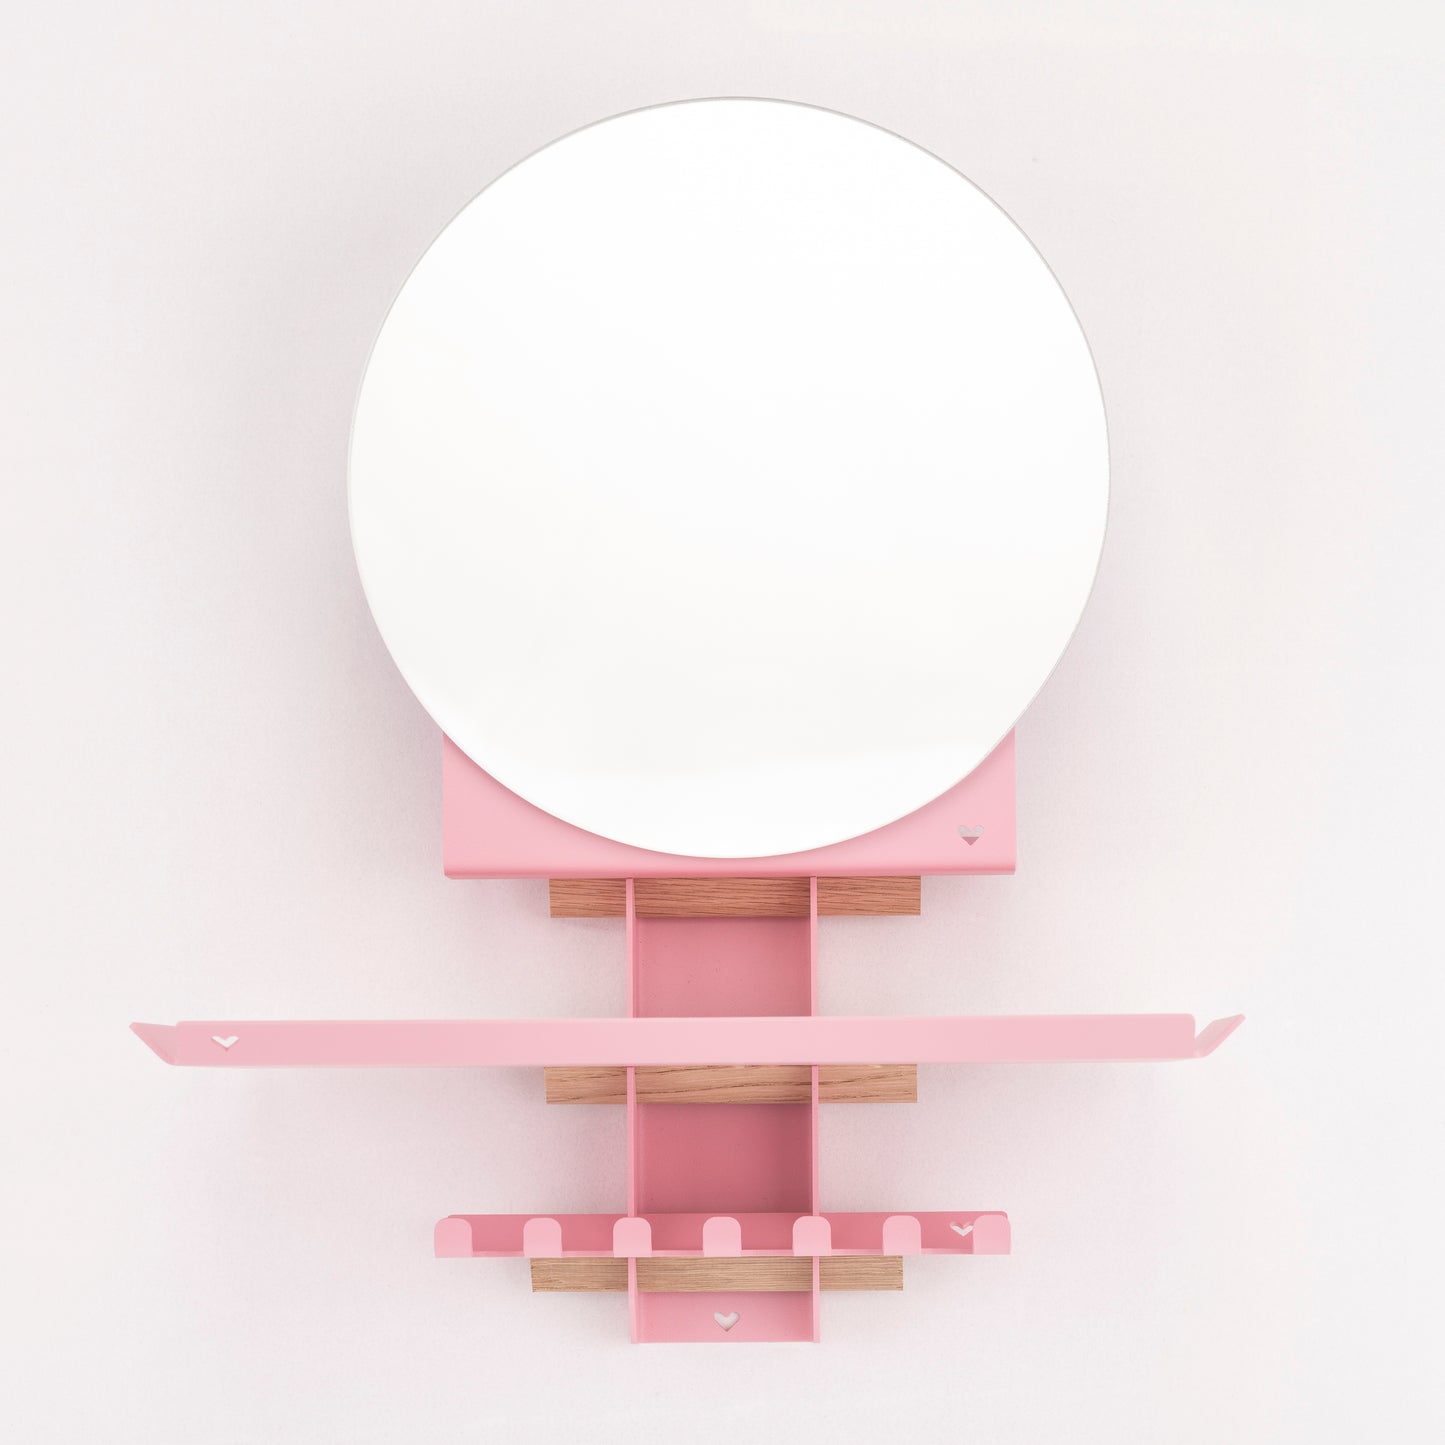 Gang spiegel met plankje en haakjes in roze